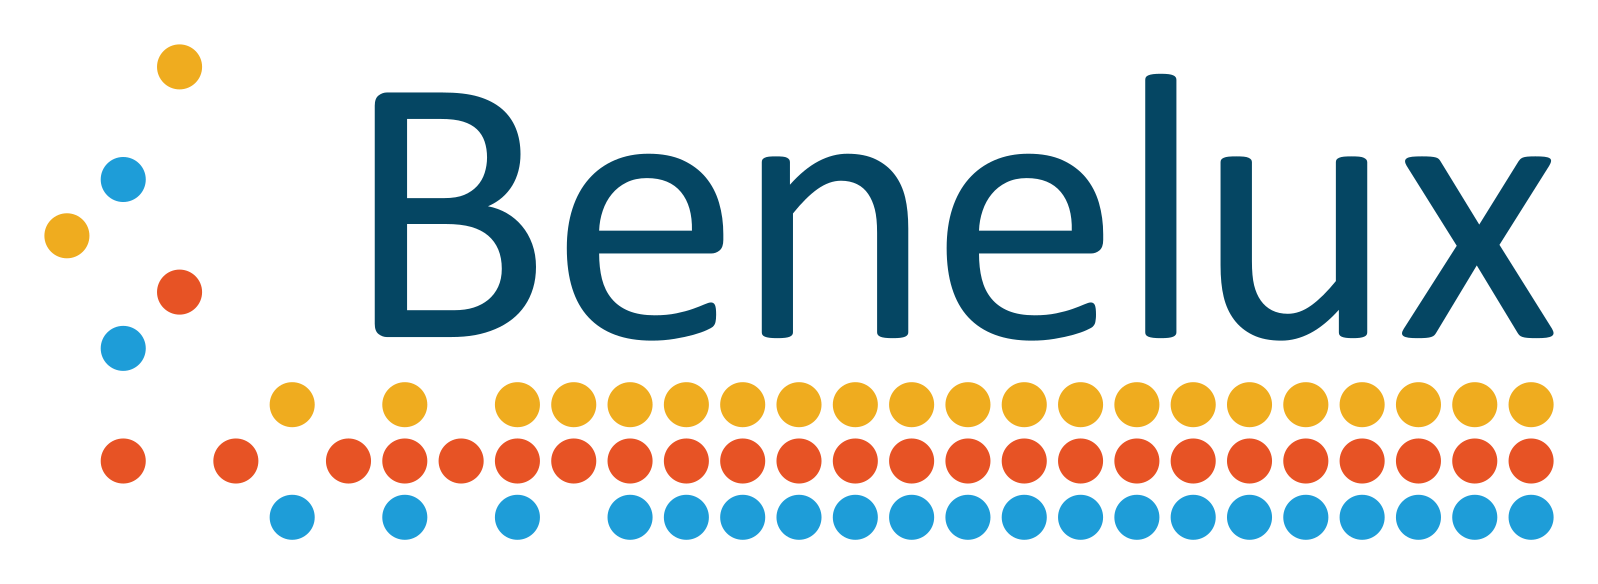 Benelux - Бенилюкс - Межправительственная организация Бельгии, Нидерландов и Люксембурга